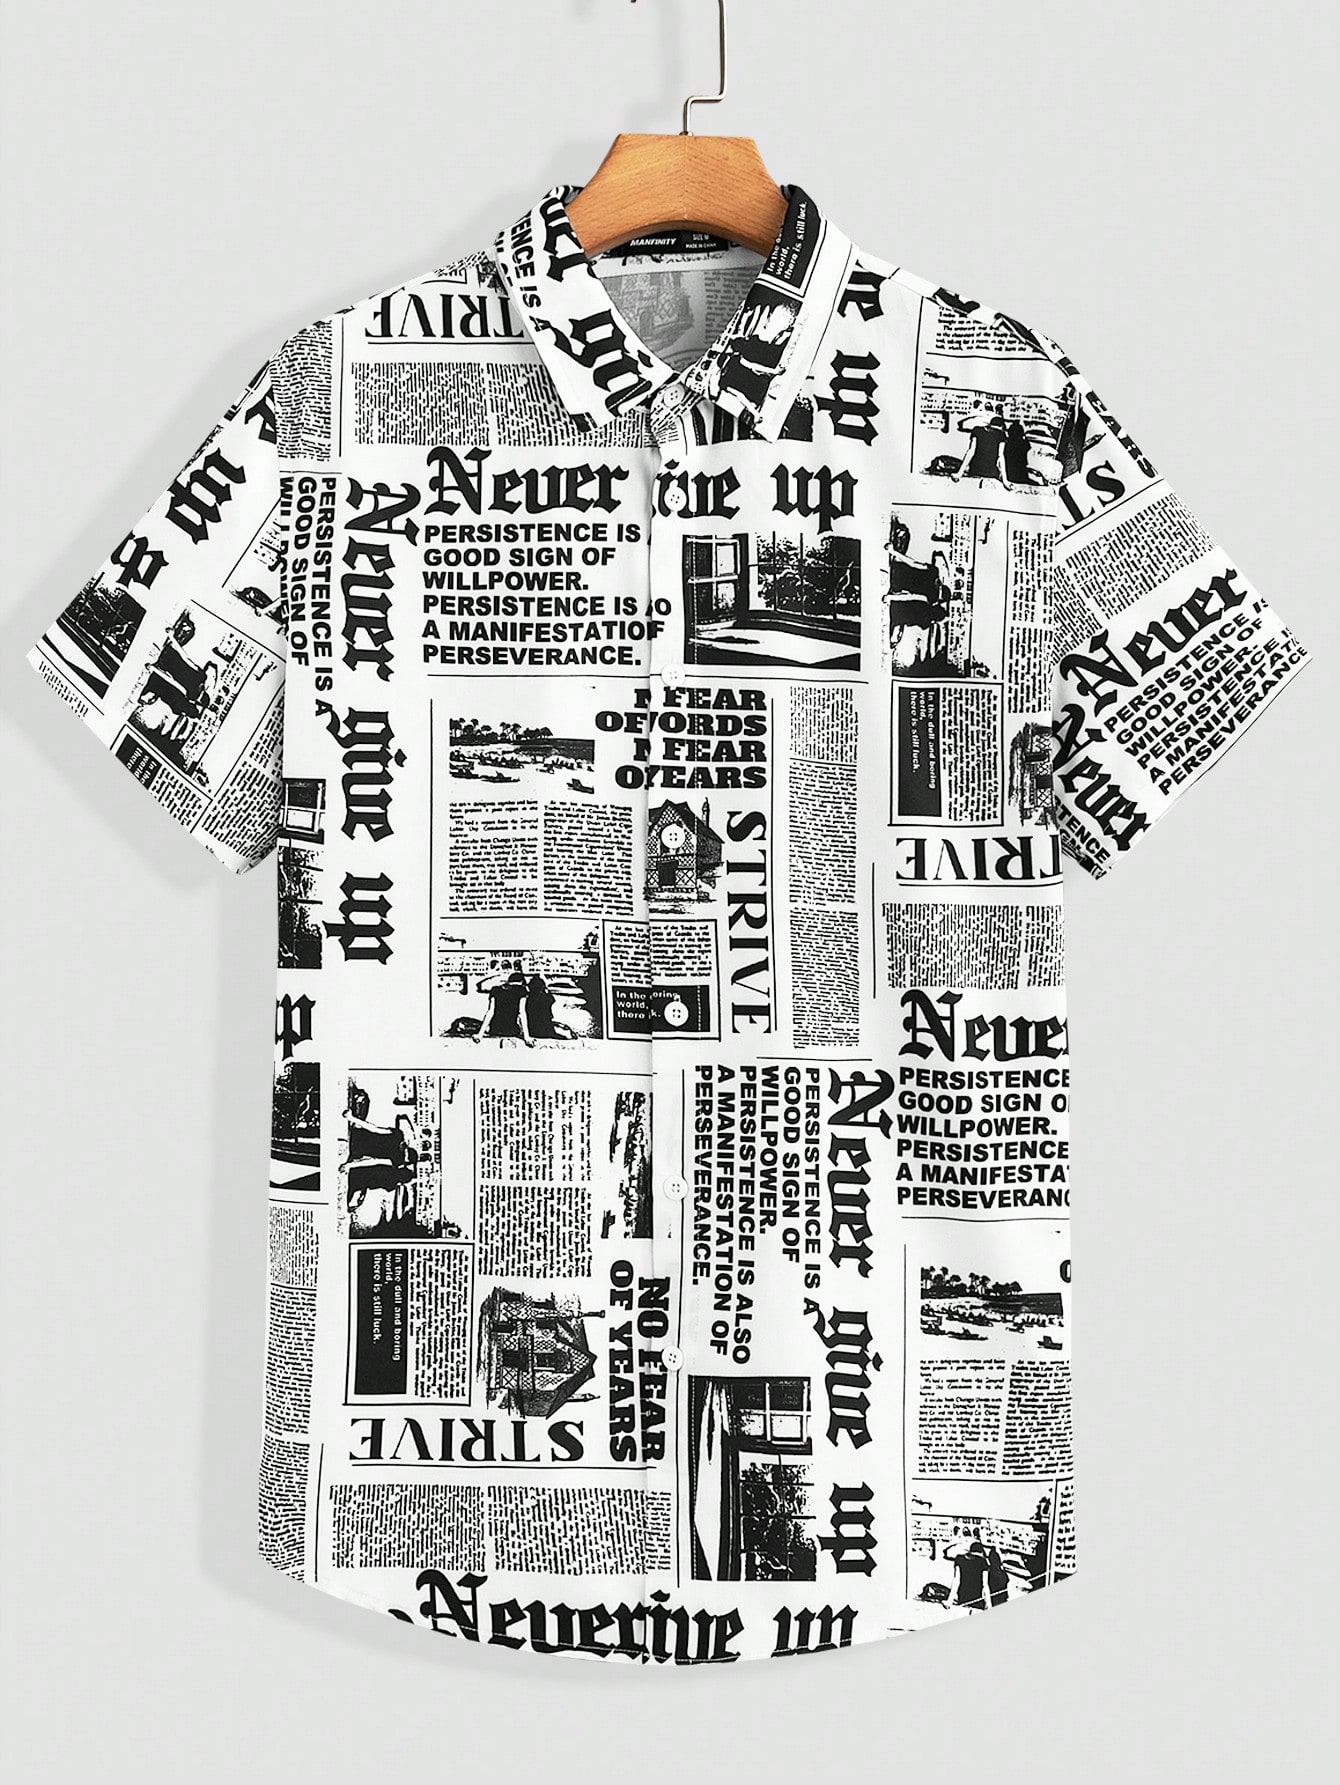 Мужская тканая рубашка с короткими рукавами Manfinity RSRT с газетным принтом, черное и белое